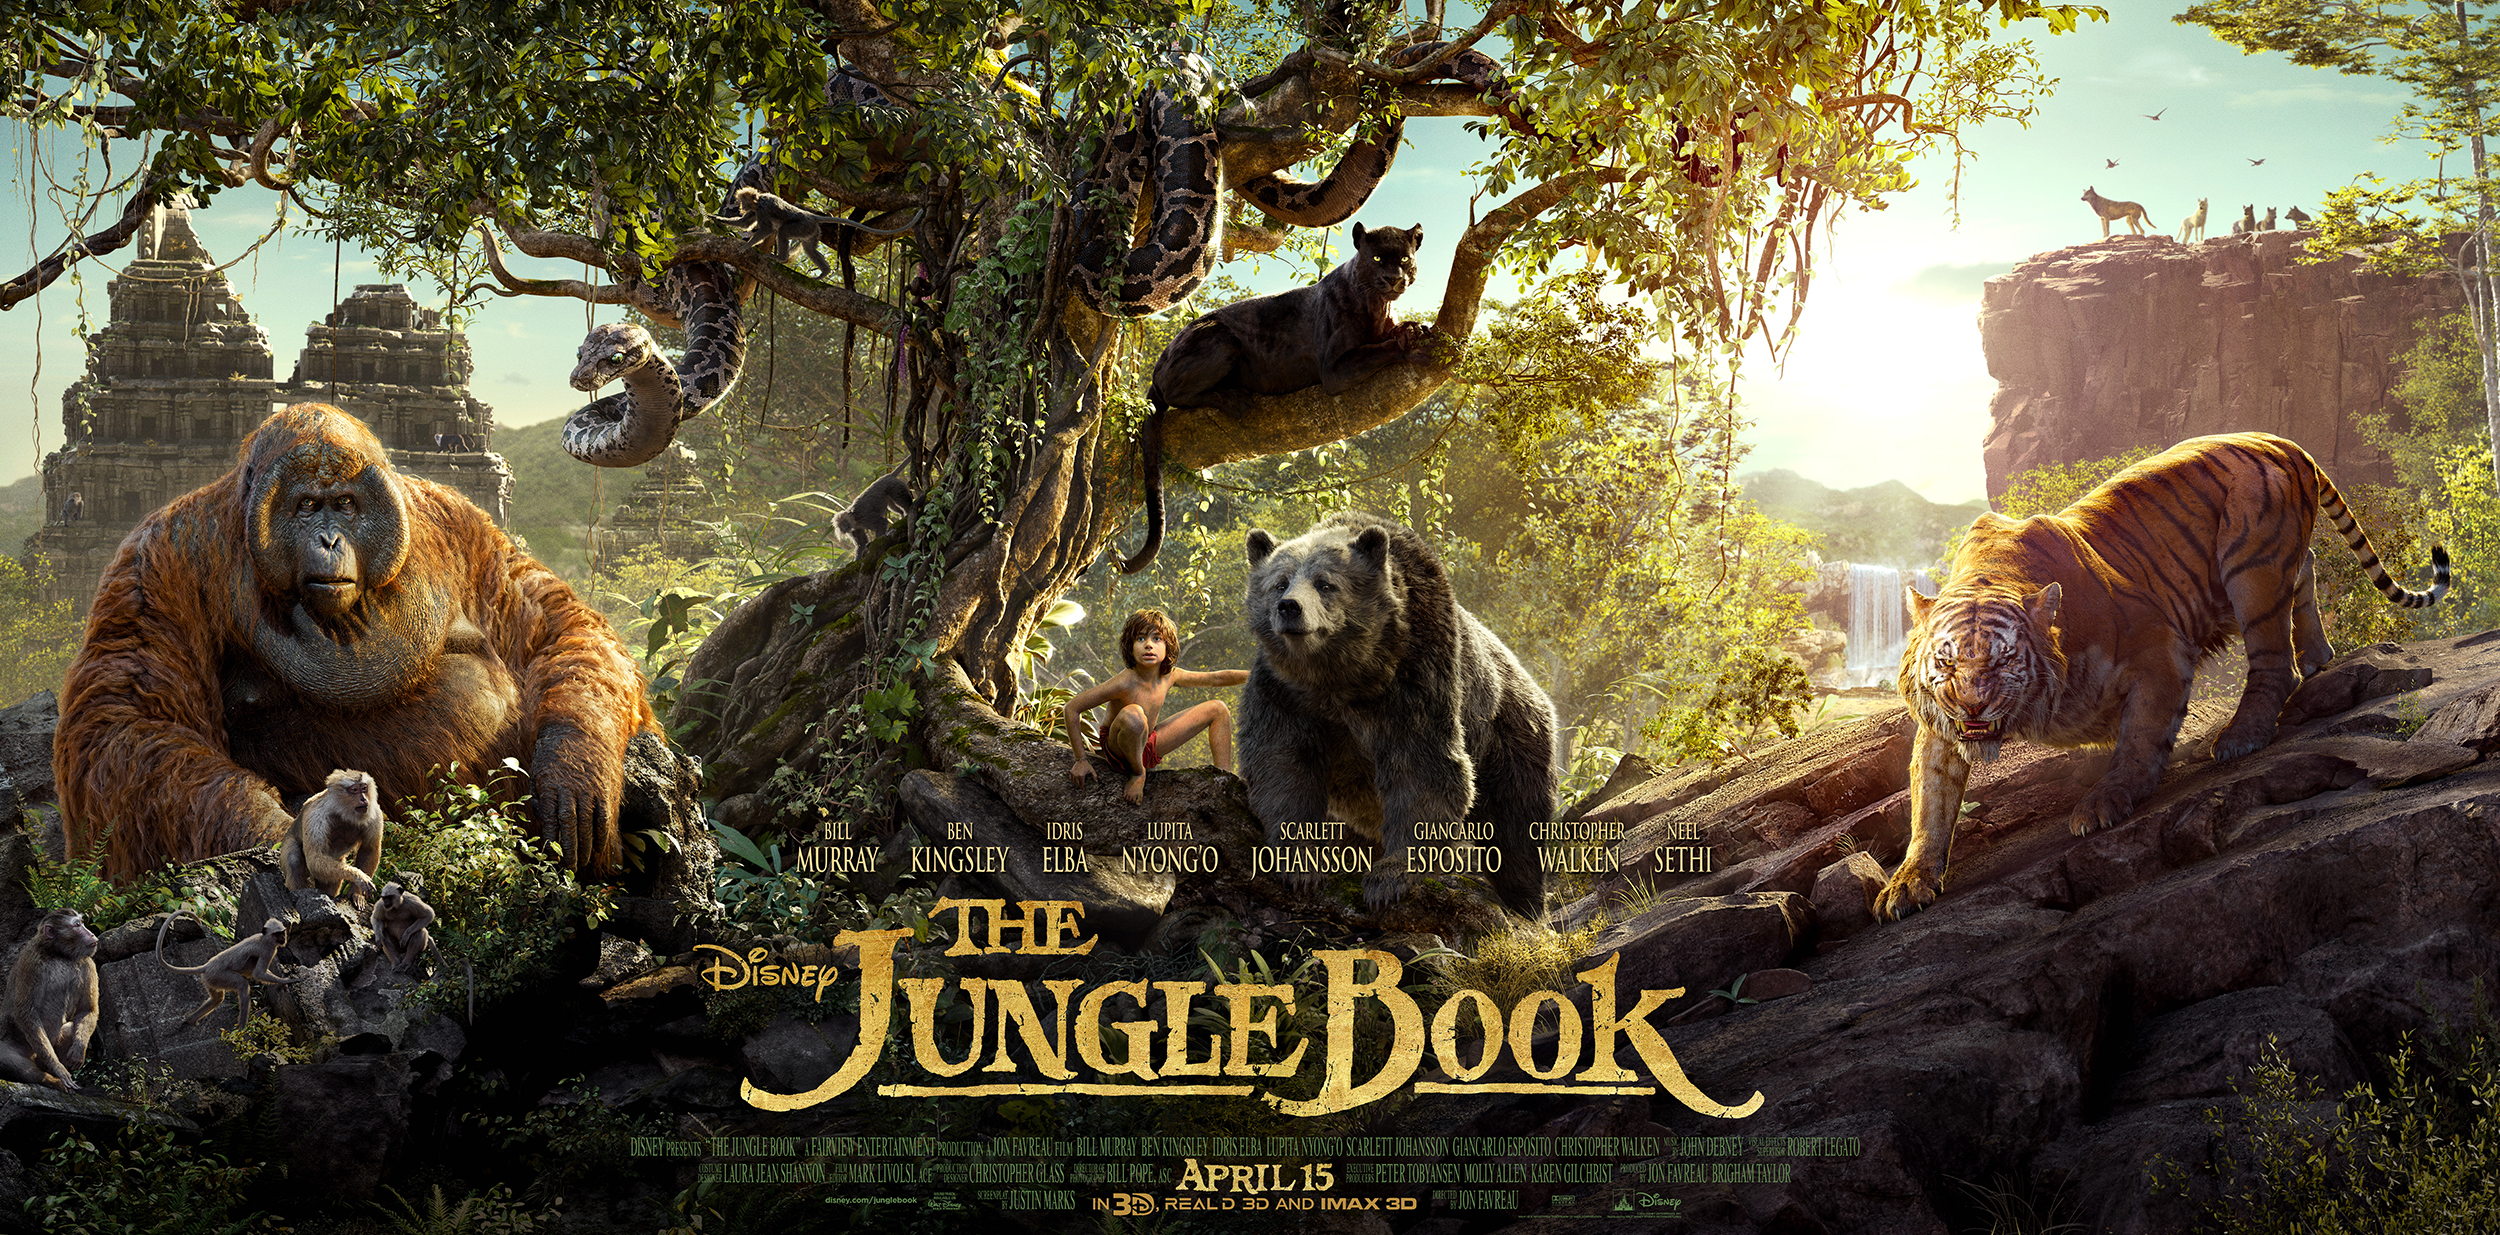 The Jungle Book Free Printables #JungleBook - Mom Does Reviews